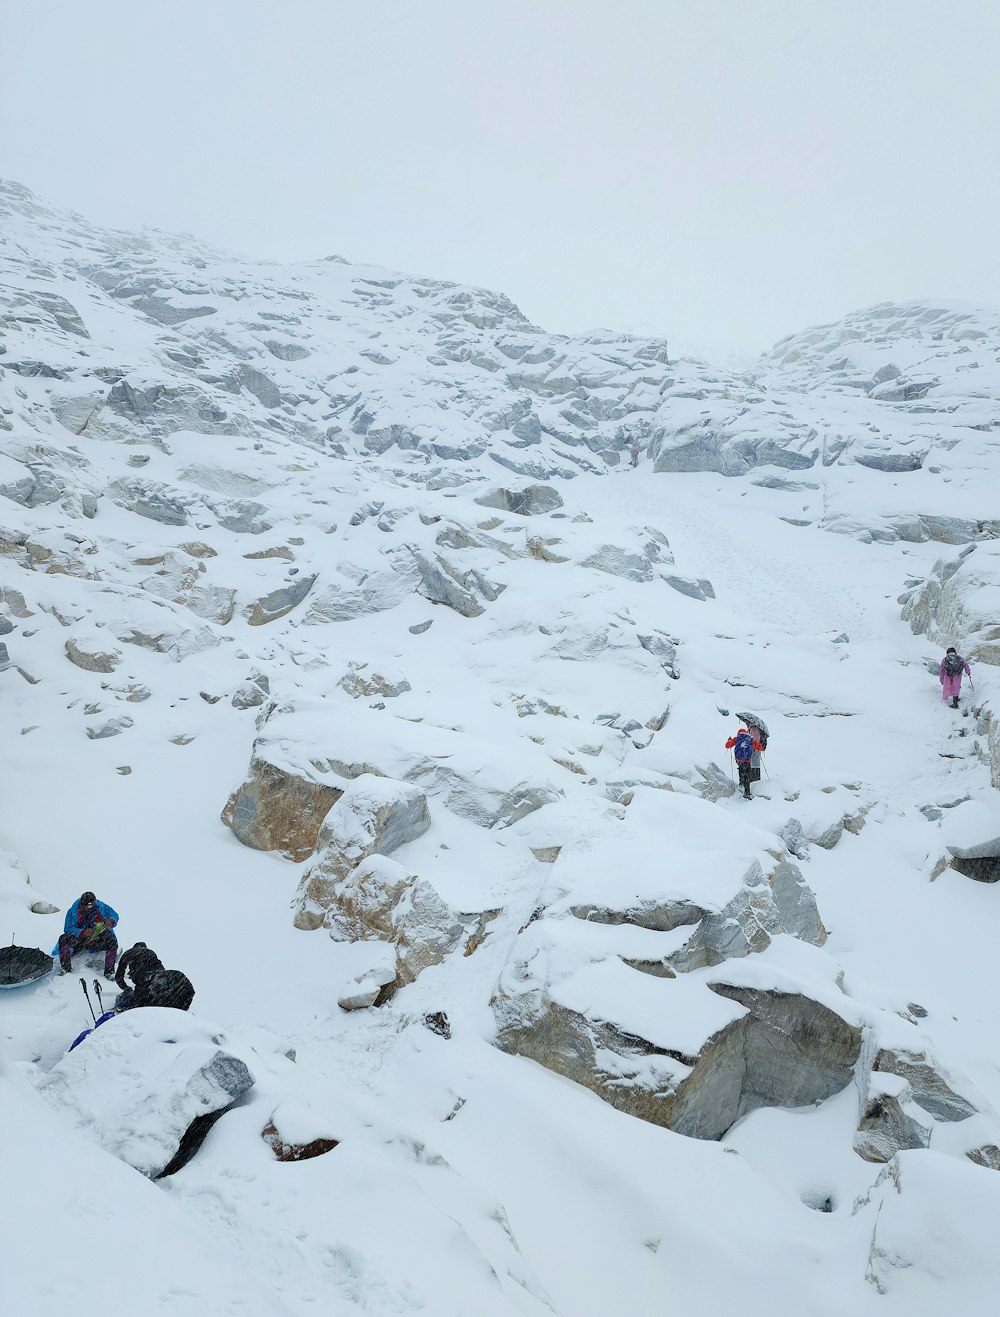 Un grupo de personas escalando una montaña nevada